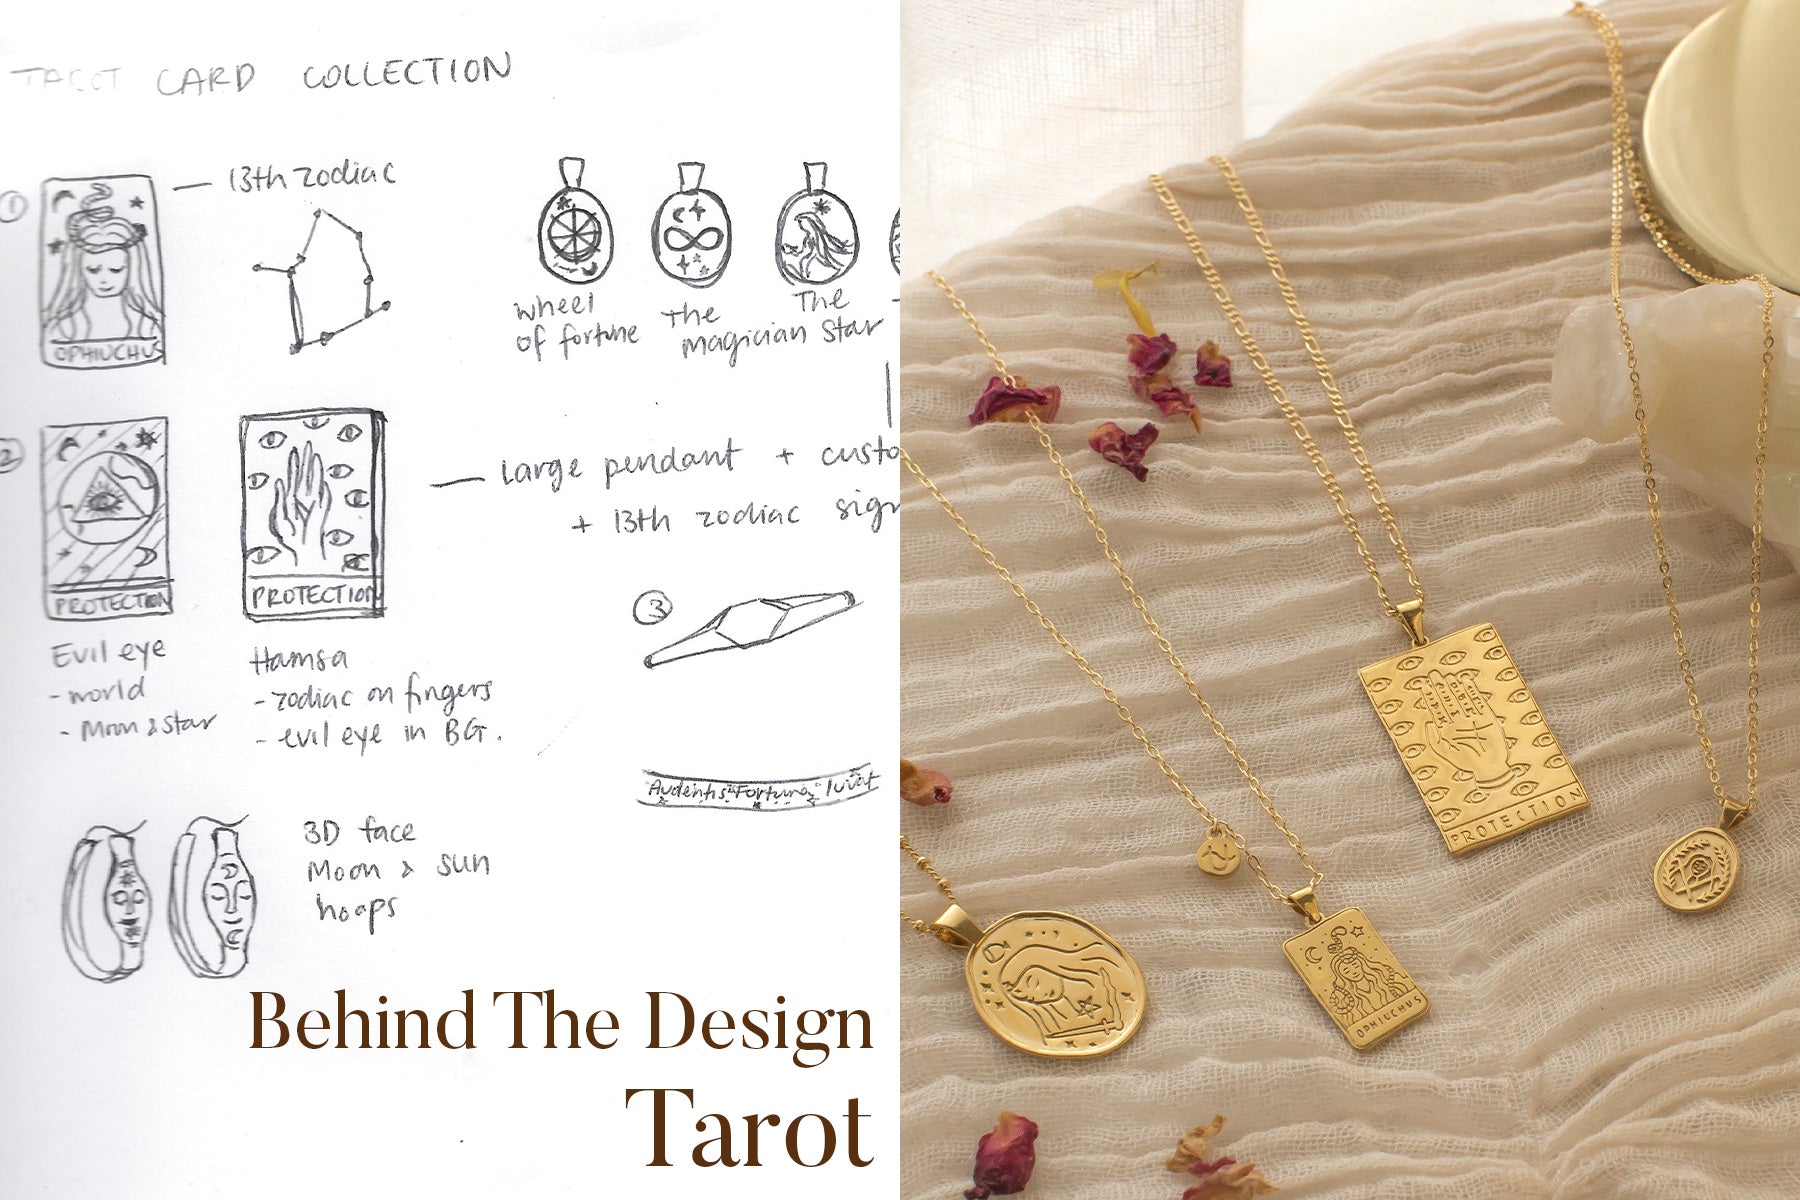 Behind the Design - Tarot